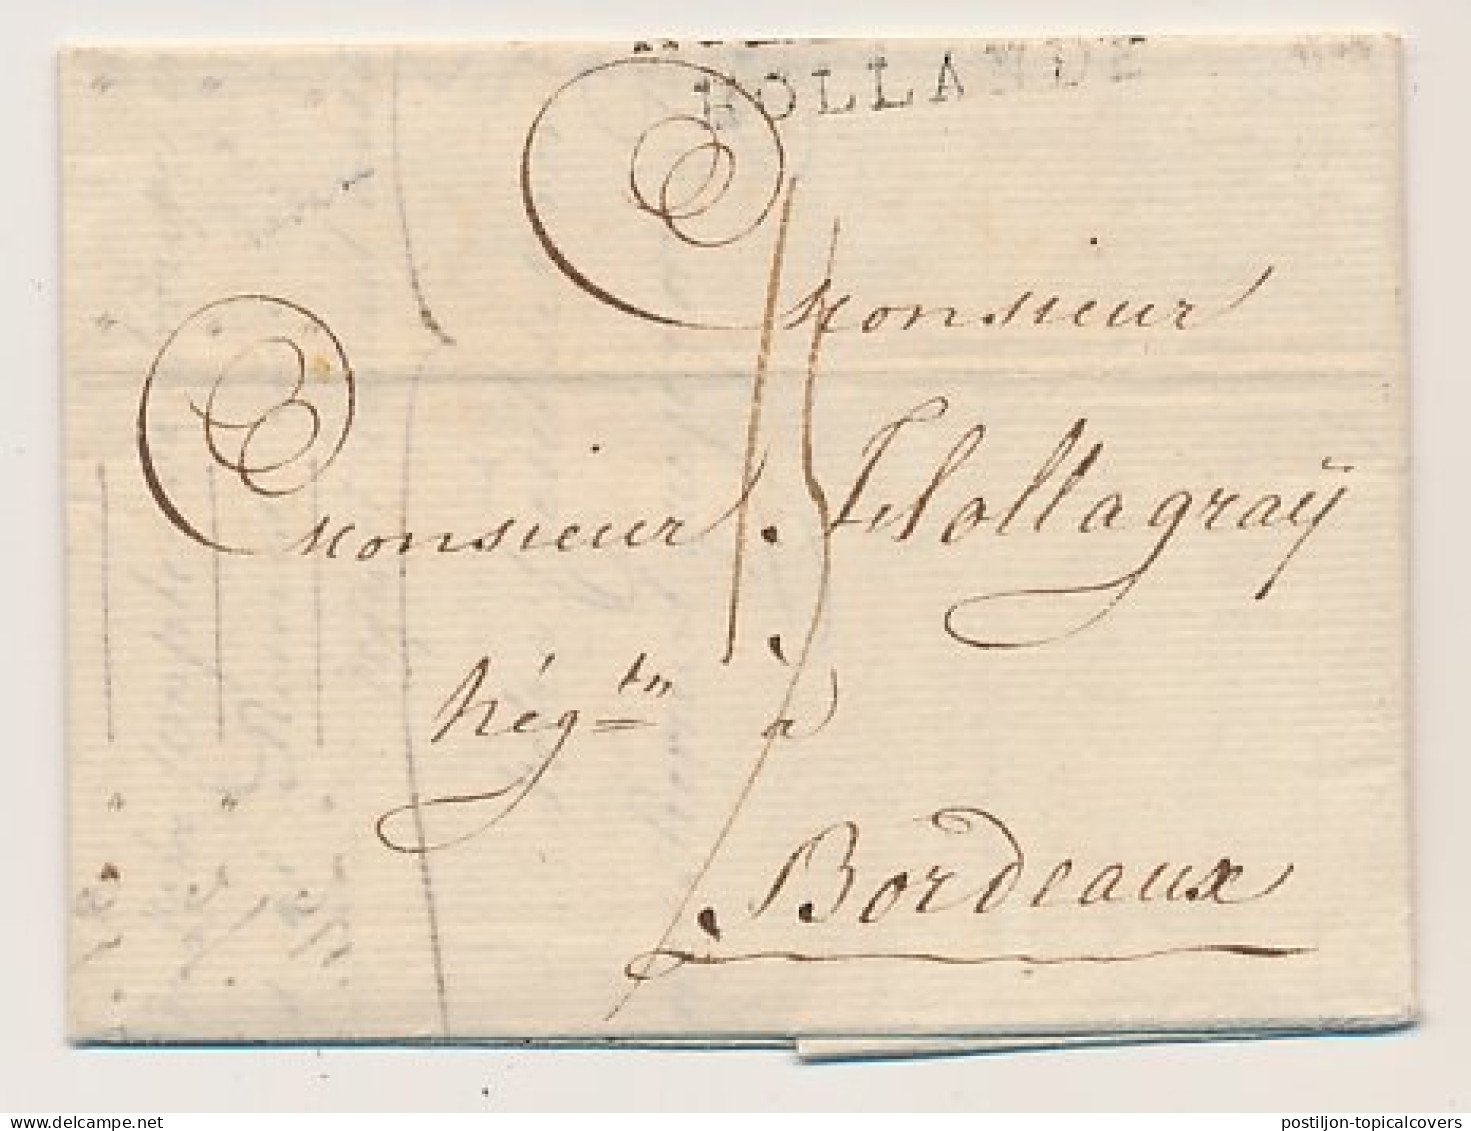 Rotterdam - Bordeaux Frankrijk 1802 - Hollande - ...-1852 Precursores